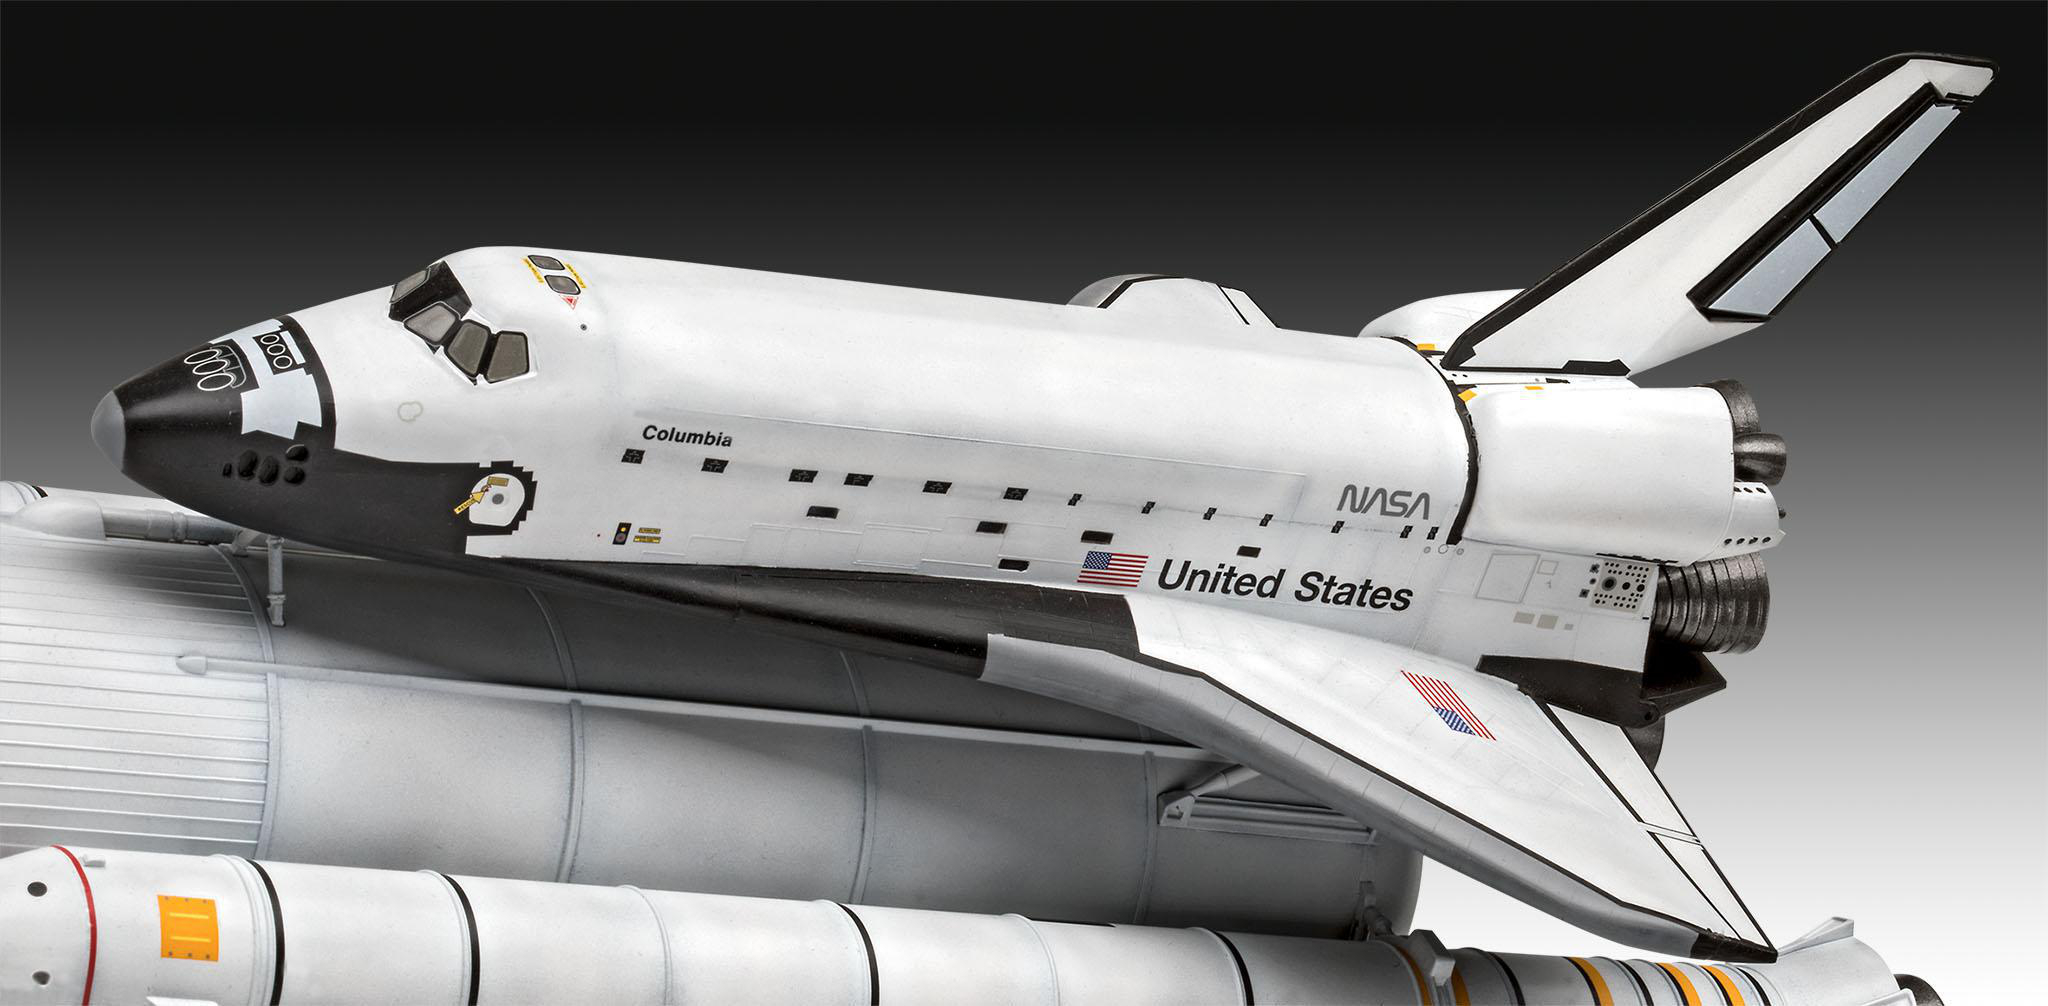 Geschenkset 40th. Mehrfarbig Rockets, REVELL Booster Space Modellbausatz, Shuttle&